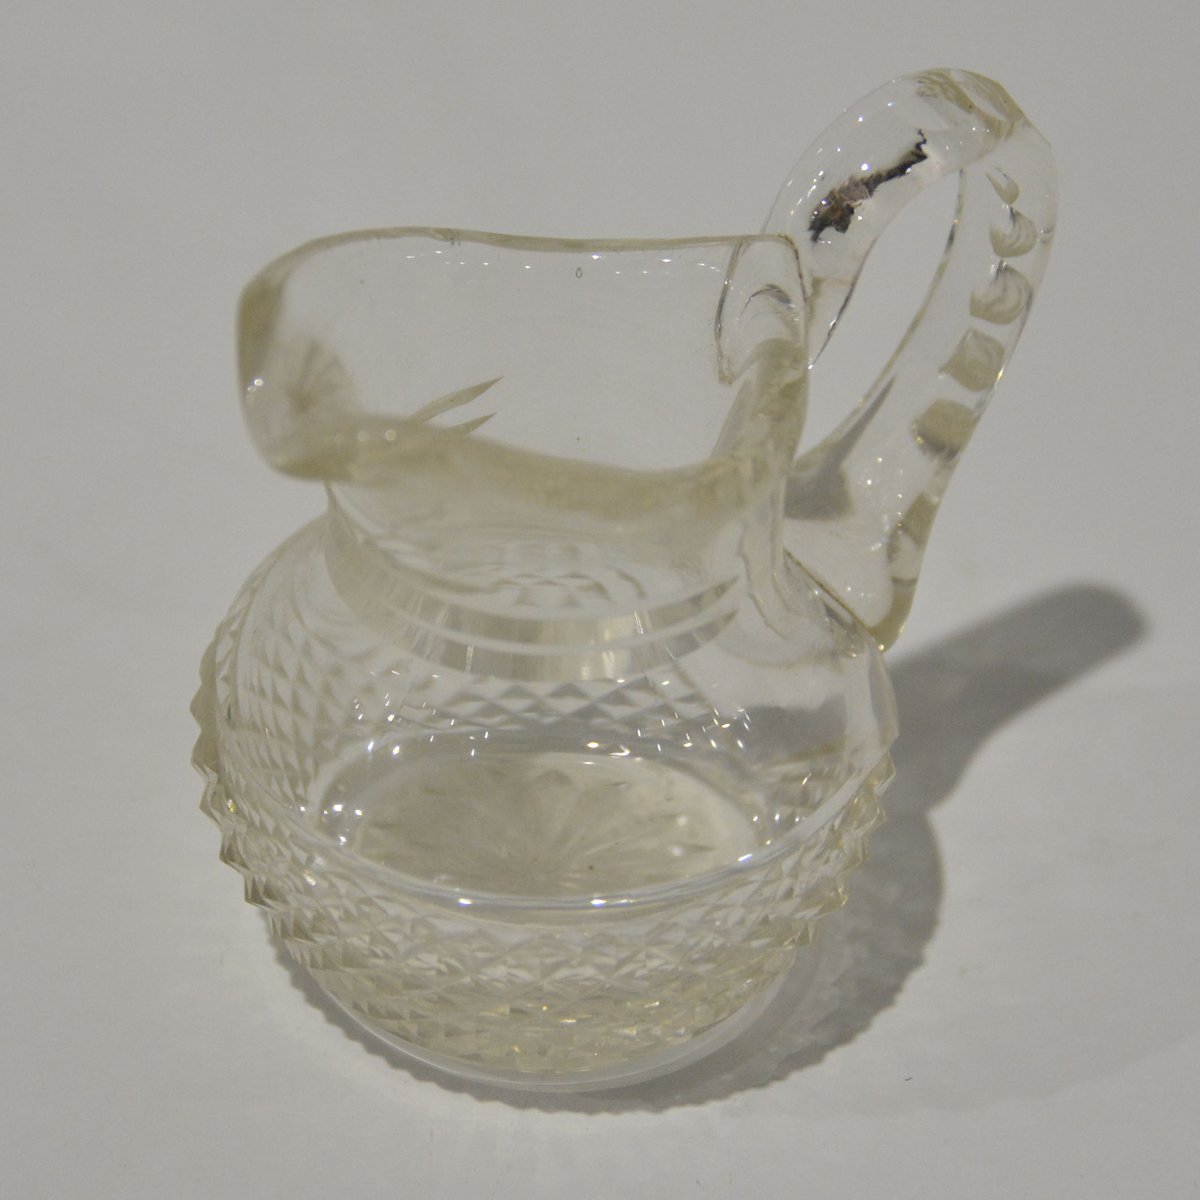 独創的 ヴィンテージ クランベリーガラス ハンドメイド 手吹きガラス